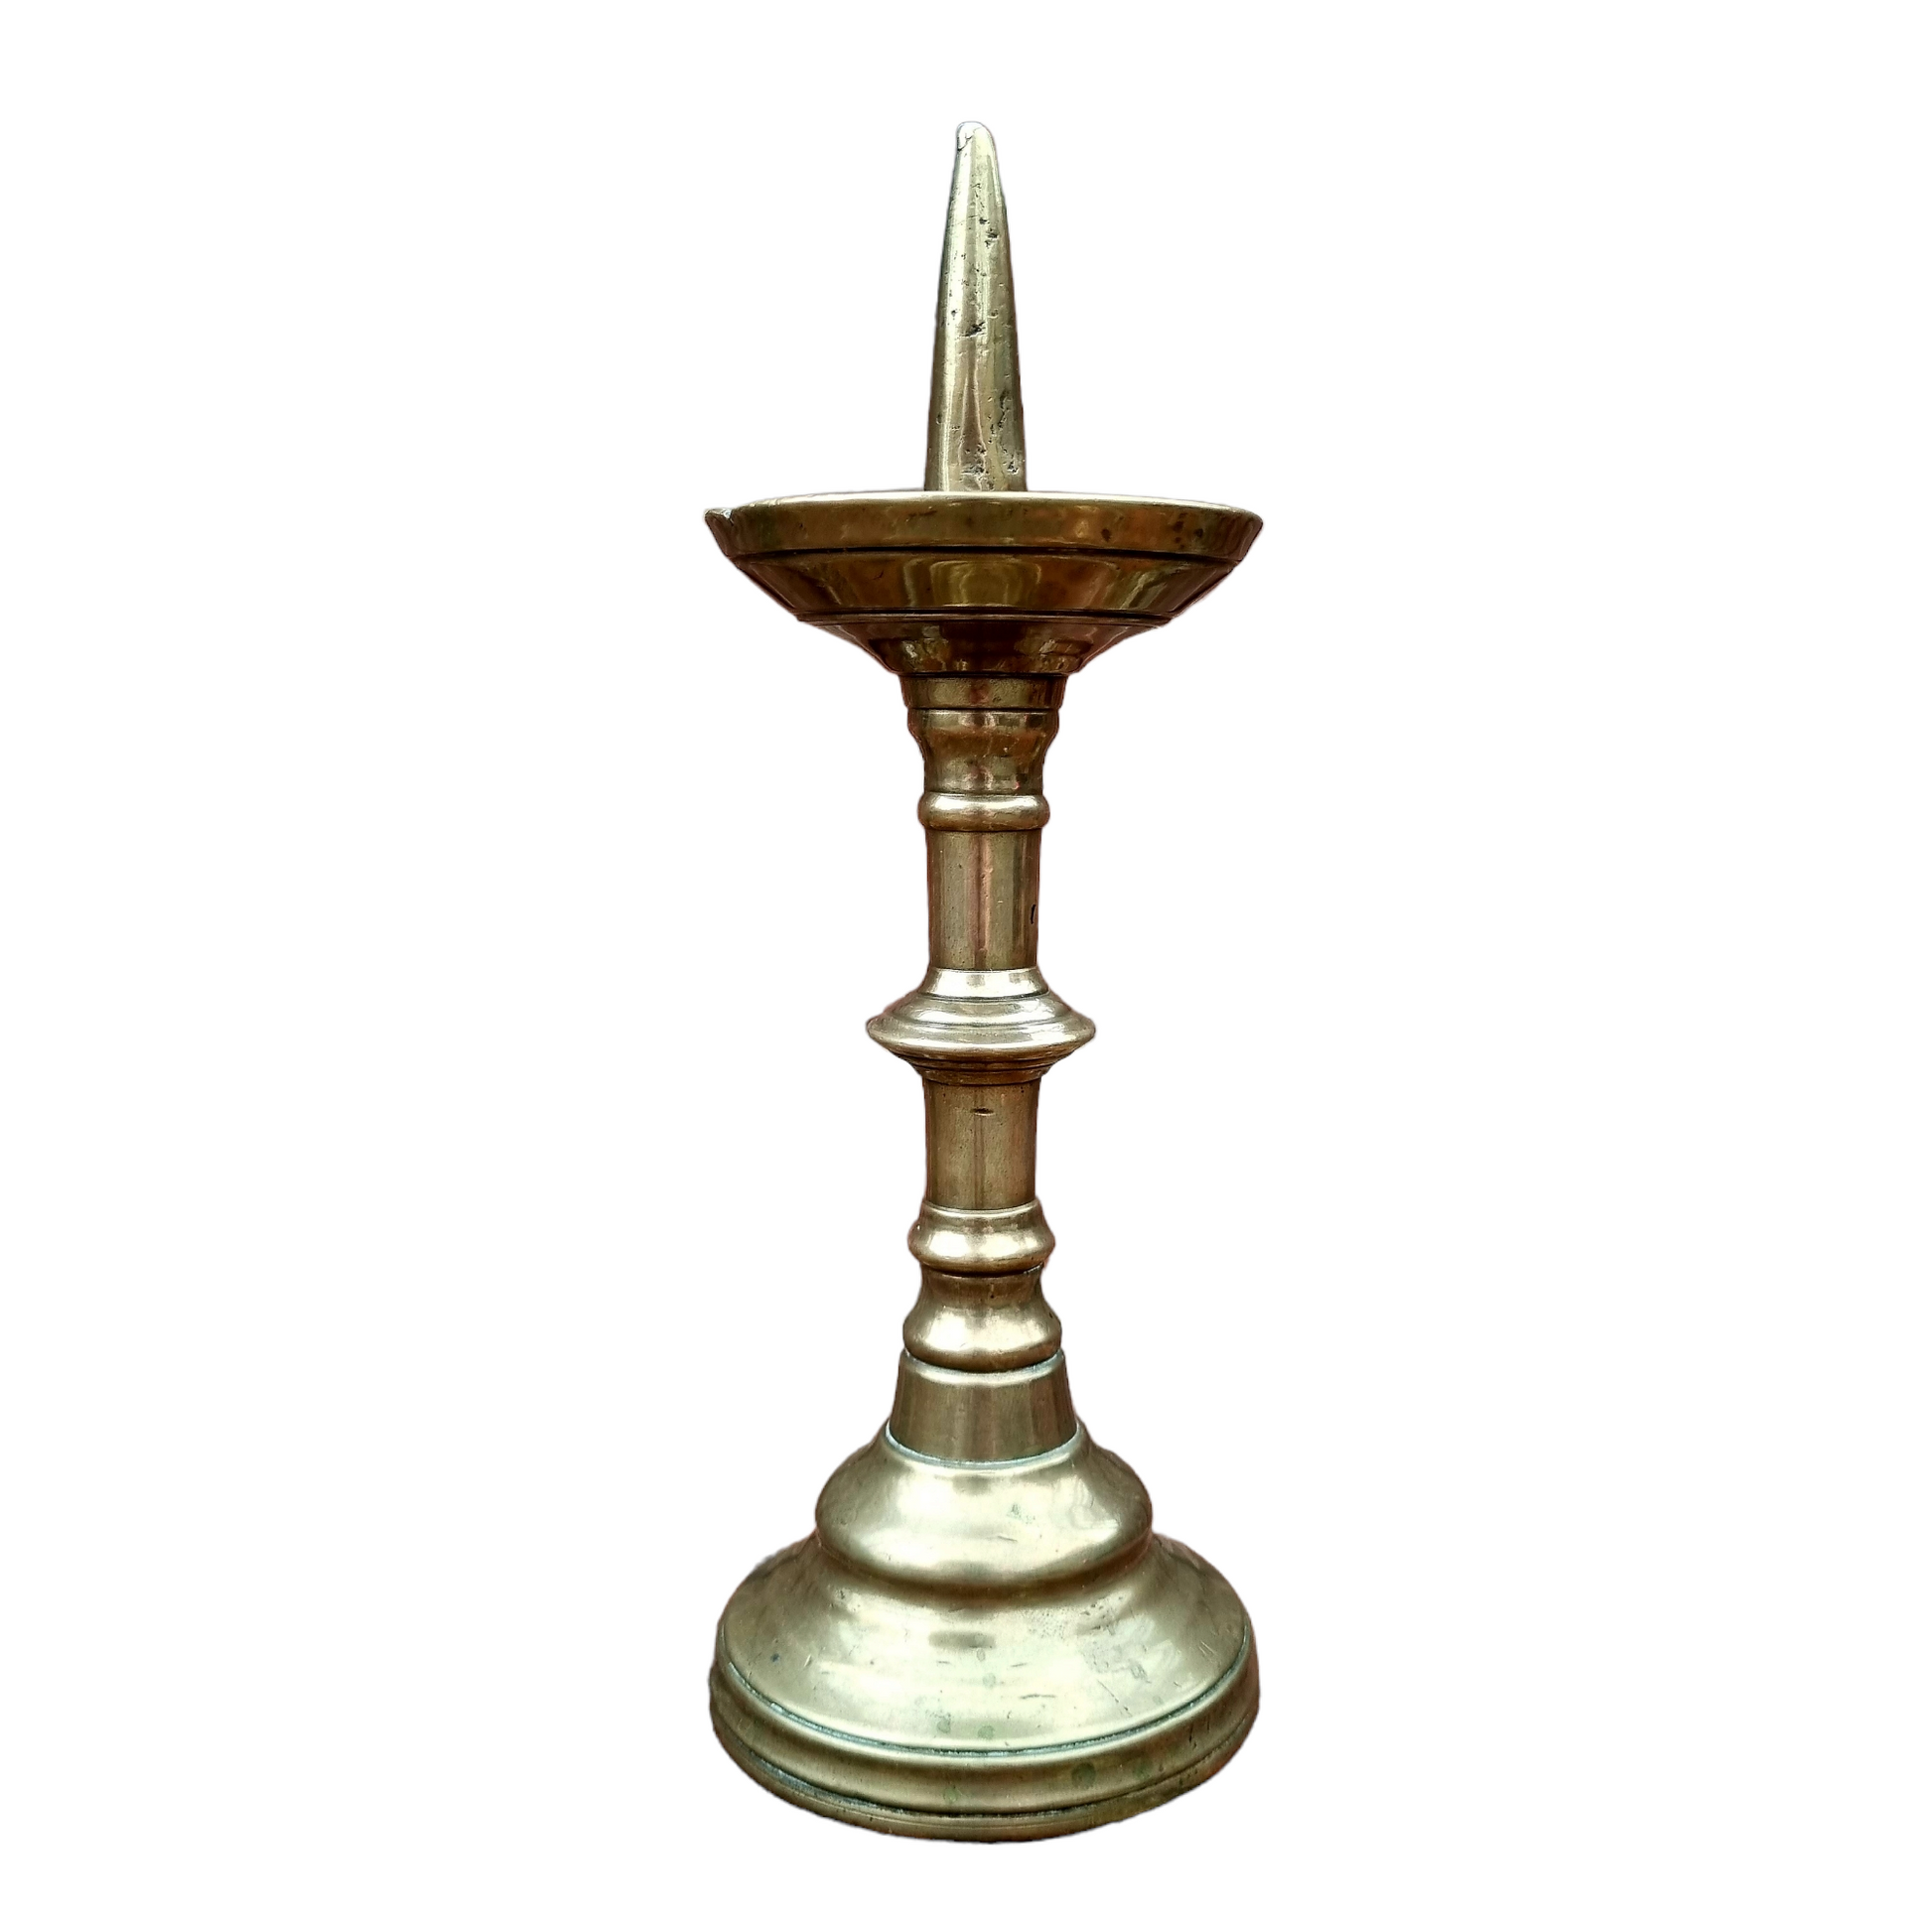 16th century brass pricket candlesticks - Marhamchurch Antiques